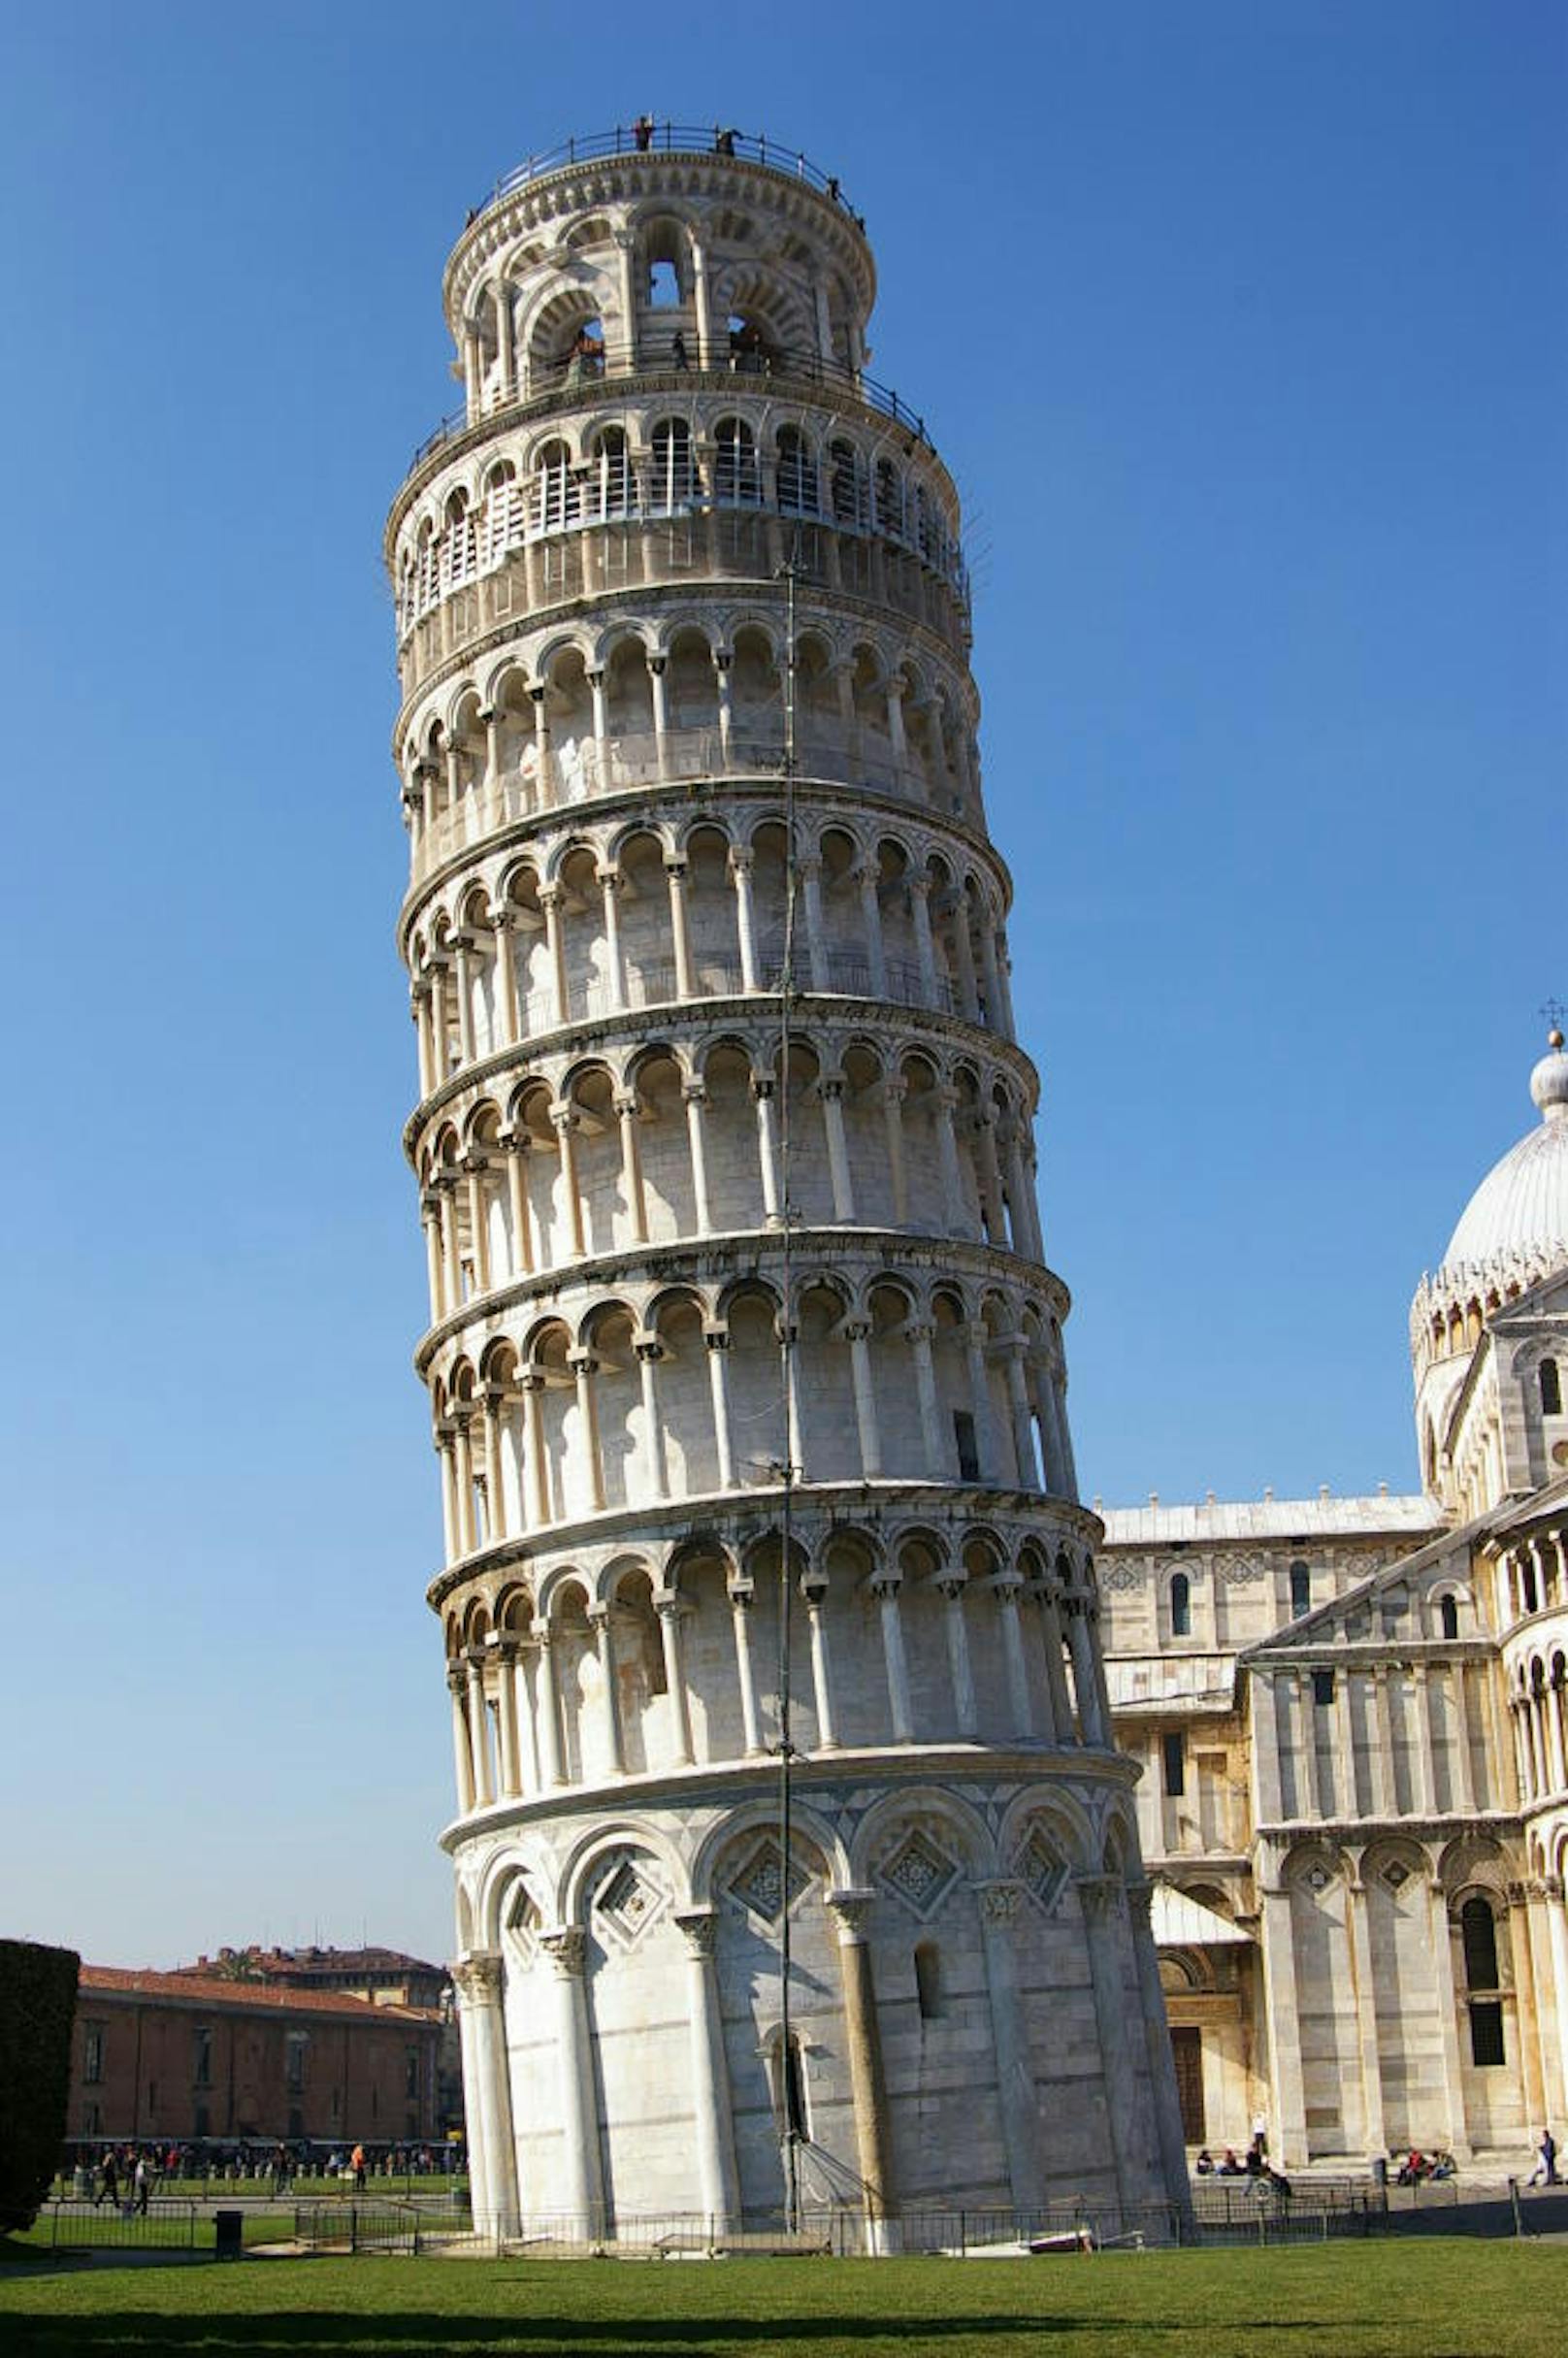 <b>Der Schiefe Turm von Pisa:</b>
Außer einer Städtepartnerschaft haben die Kleinstadt Niles im US-Bundesstaat Illinois und Pisa in der Toskana noch eines gemeinsam: einen schiefen Turm. Die italienische Ausgabe war als freistehender Glockenturm geplant. Zehn Jahre nach der Grundsteinlegung im Jahr 1173 begann der Turm sich aufgrund des lehmig-sandigen Bodens zu neigen.